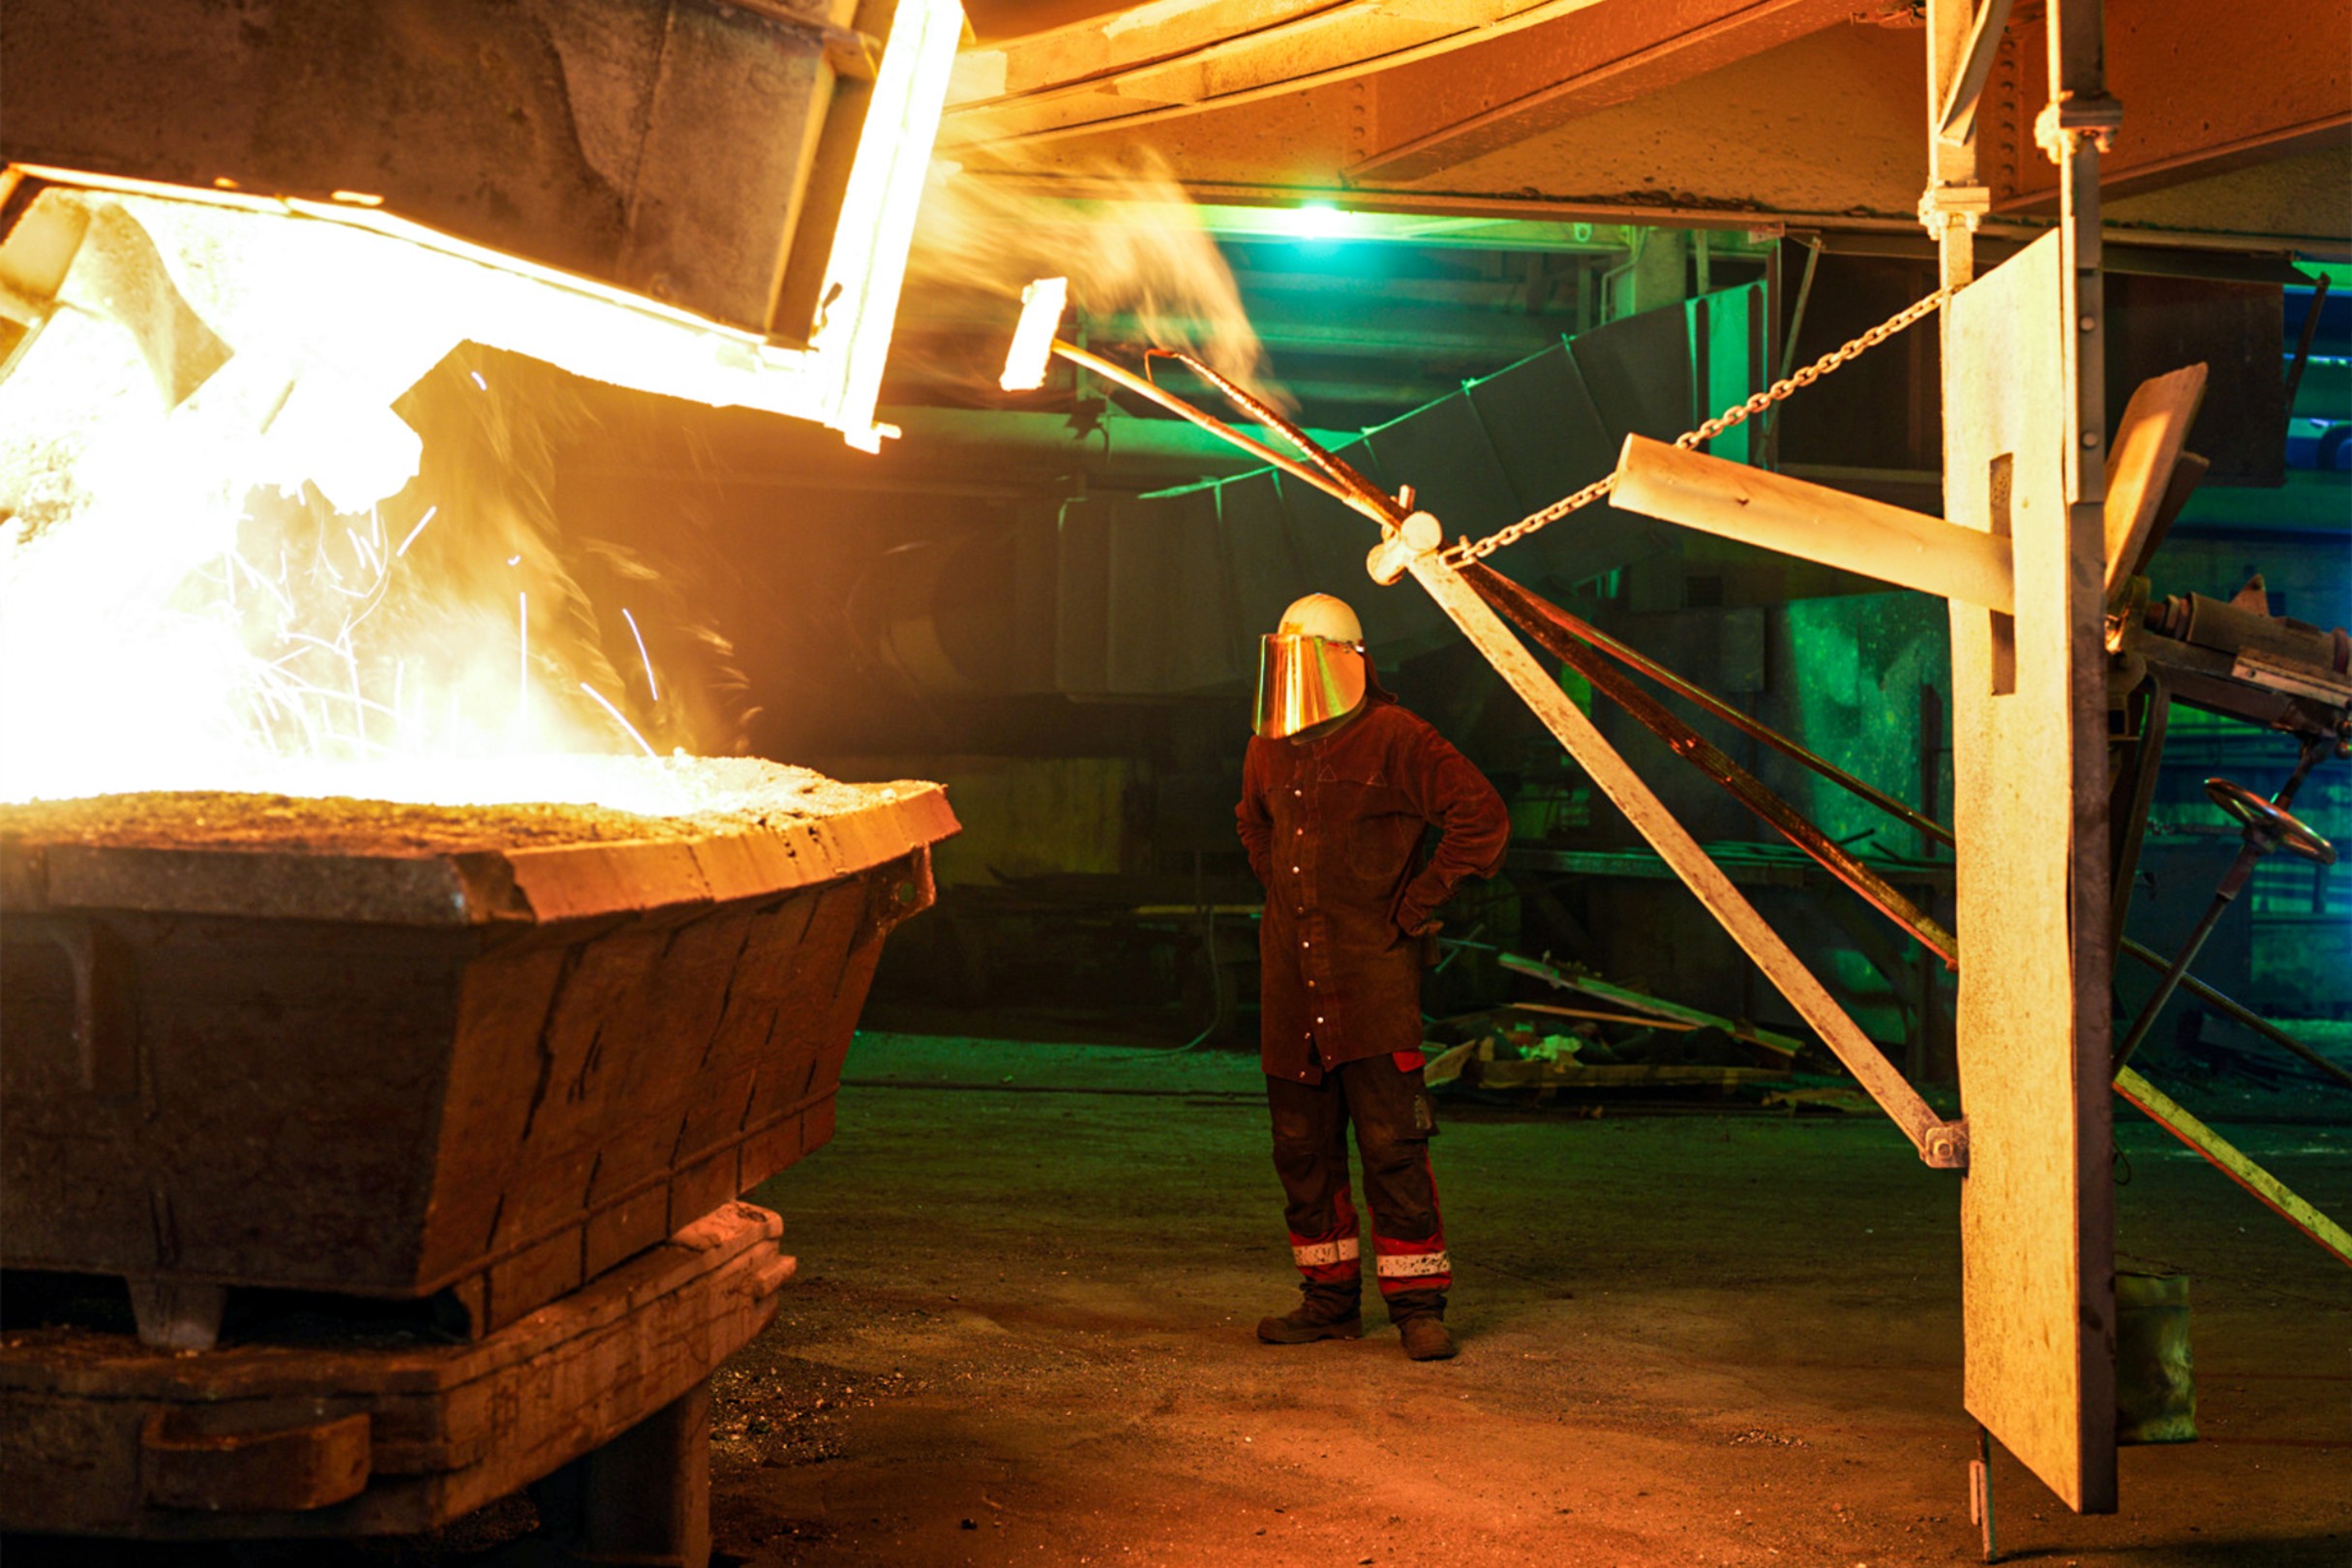 Produktion von Silicium aus Quarz und Kohle am Standort Holla, Norwegen